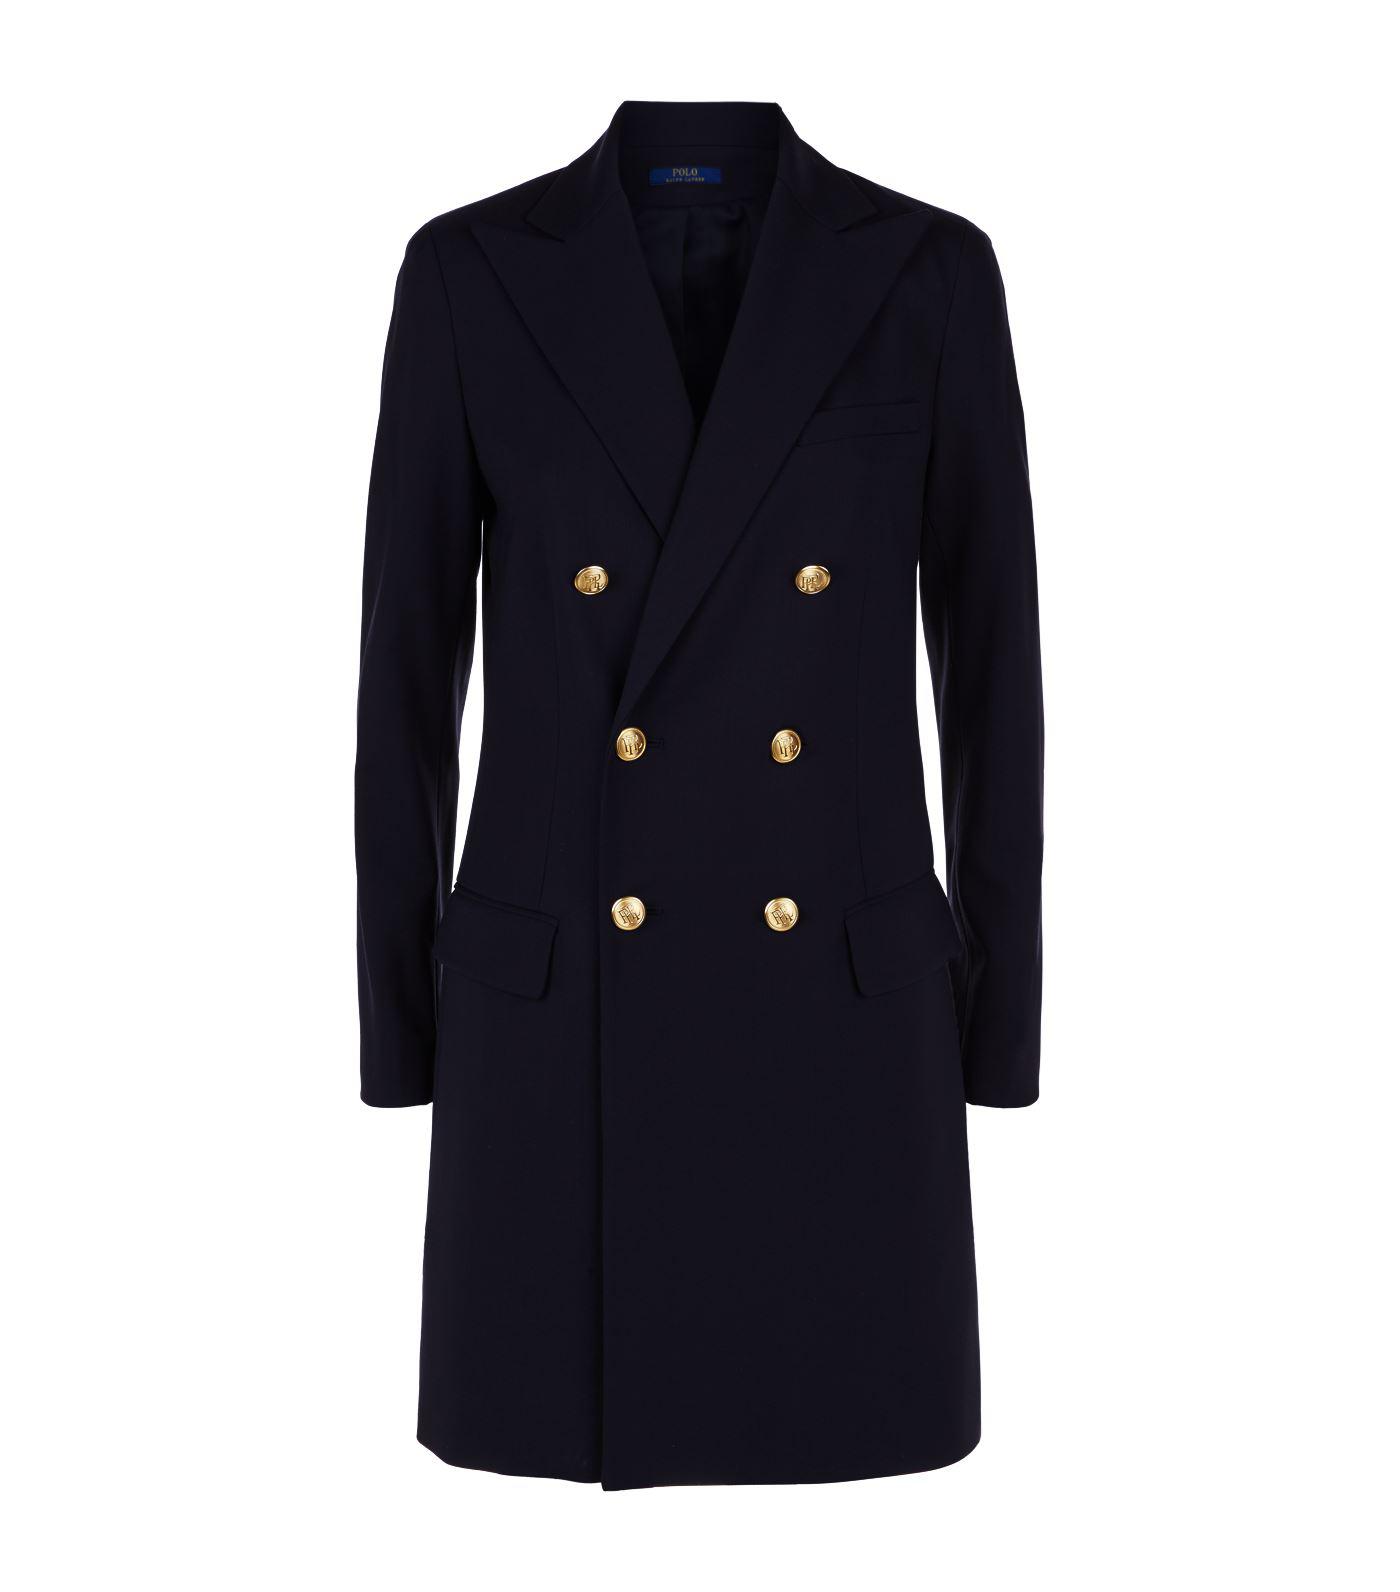 Polo Ralph Lauren Wool Double-breast Longline Blazer in Navy (Blue) - Lyst